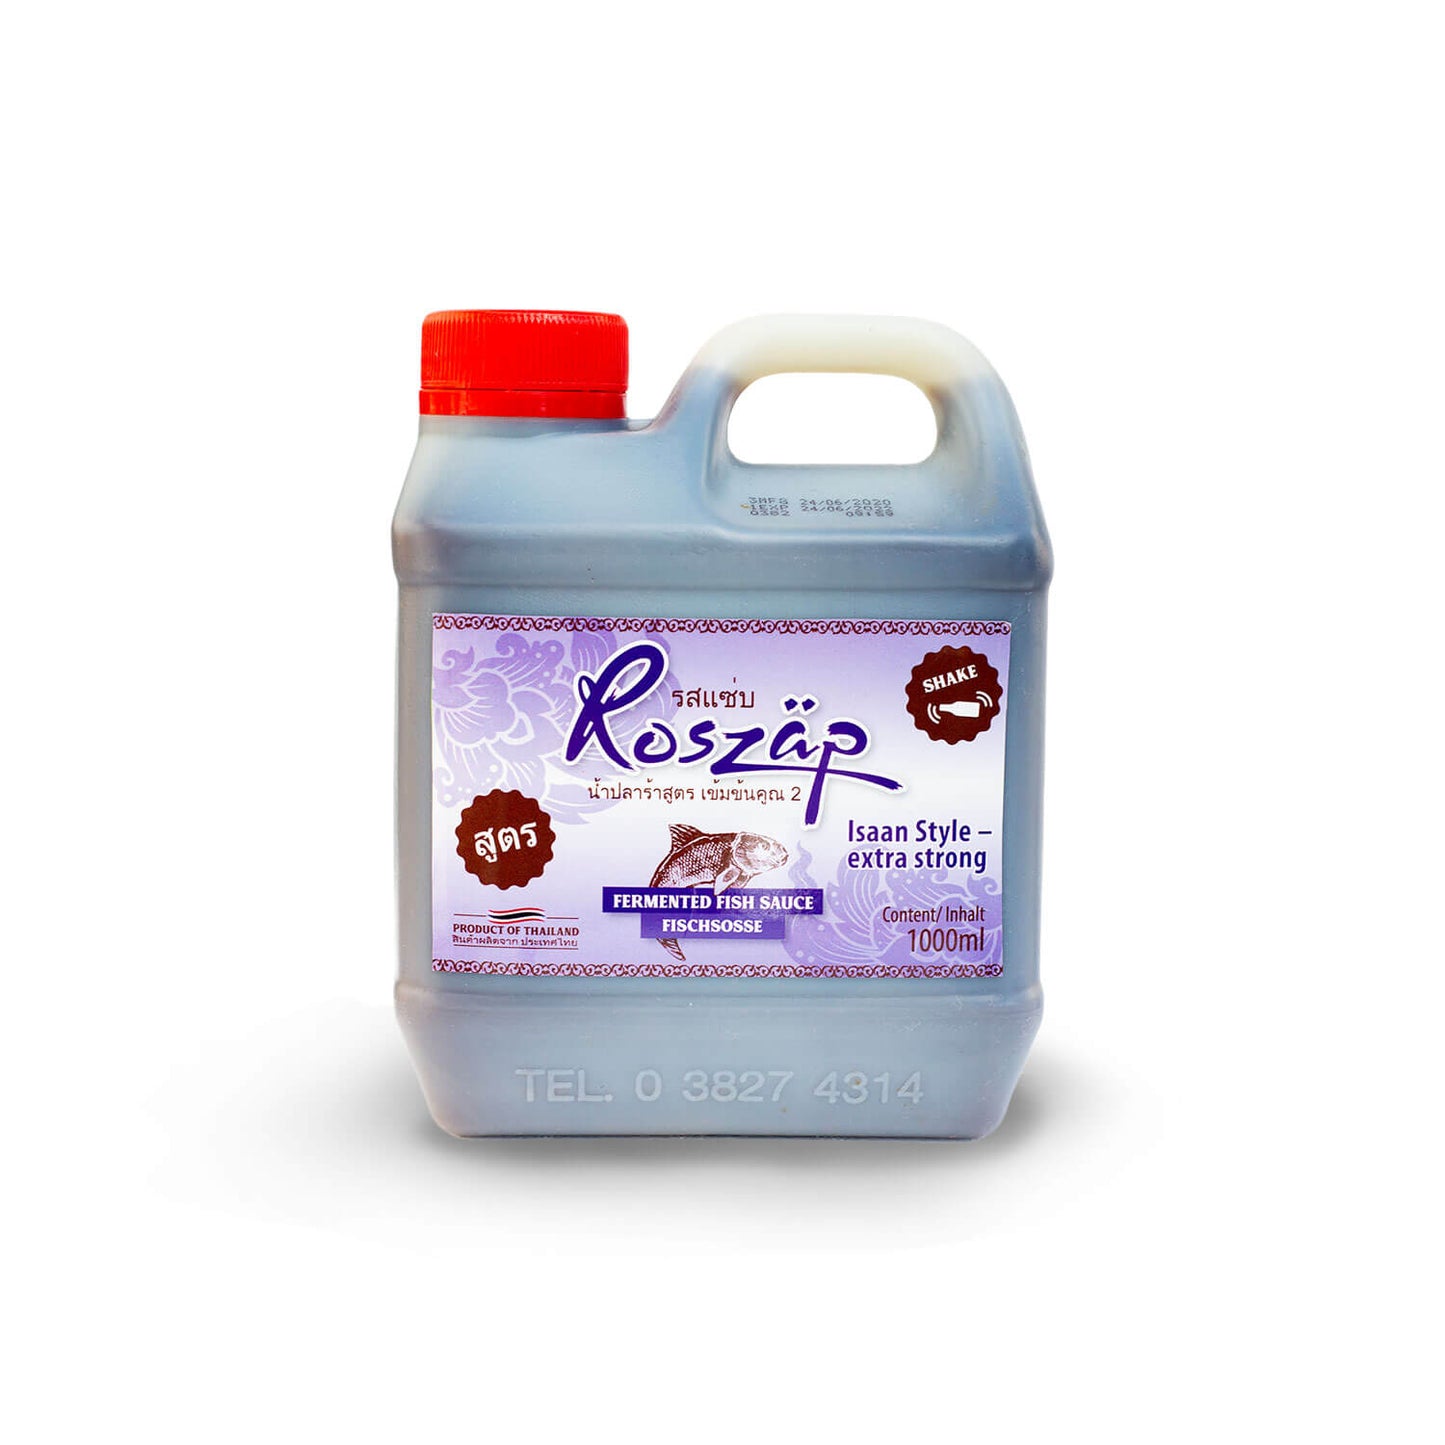 Roszäp – Fischsauce „Isaan-style“ 1000ml Family Pack